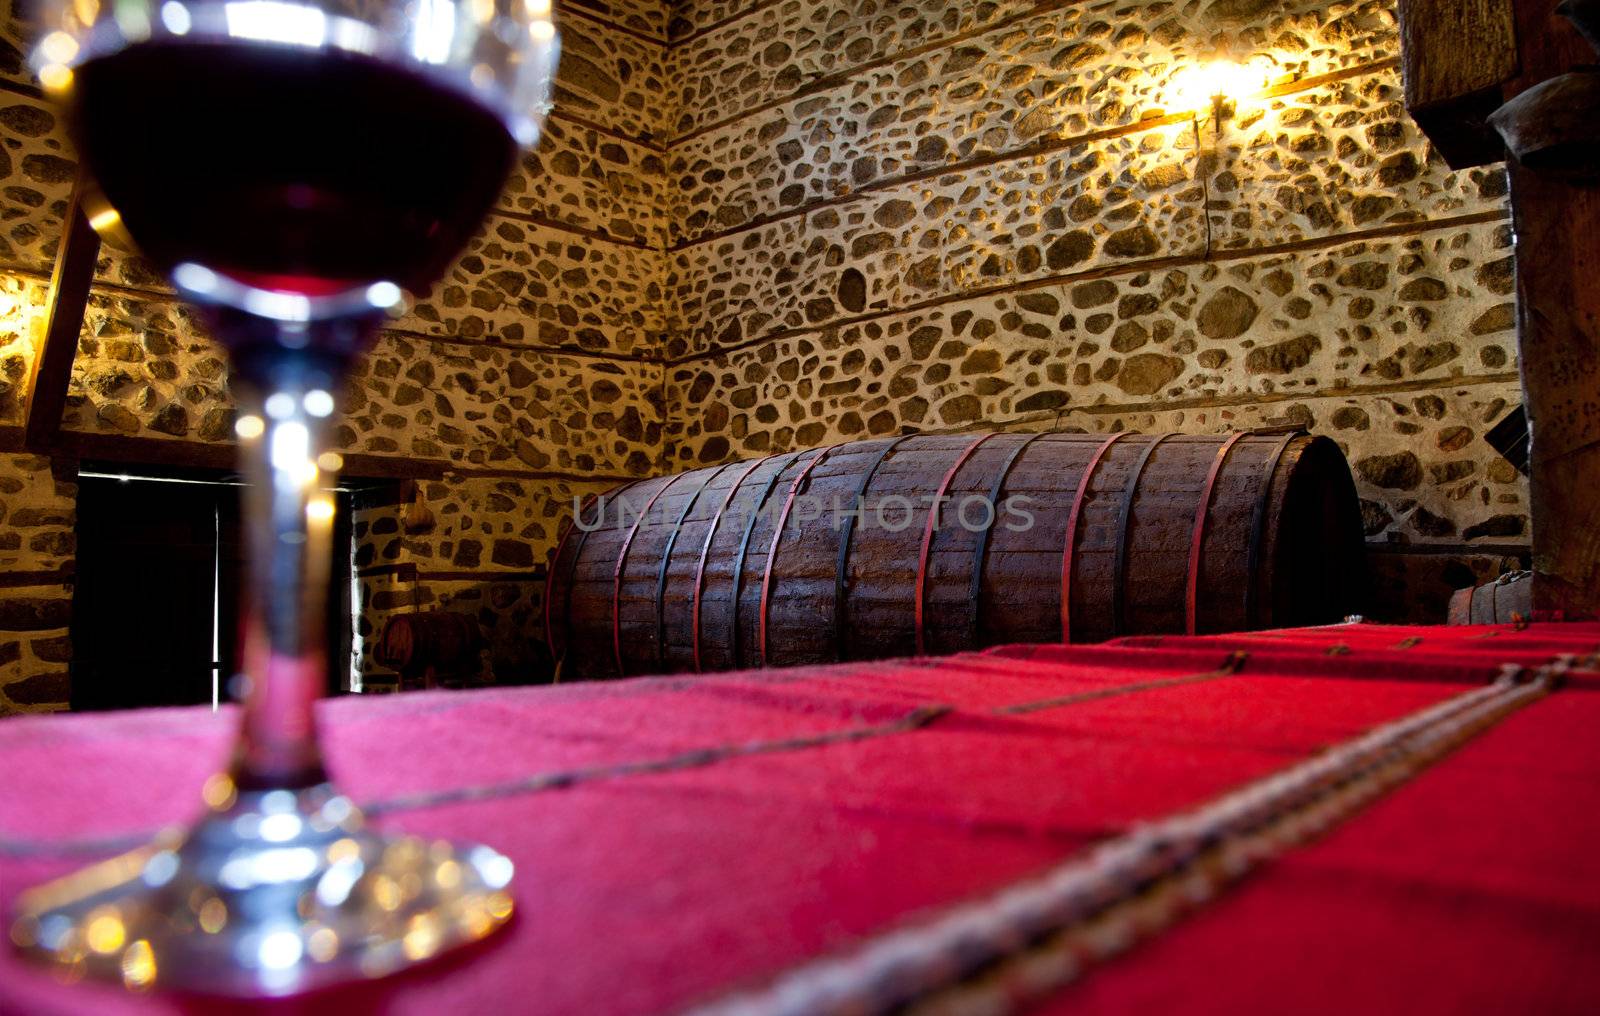 Wine barrel cellar by vilevi